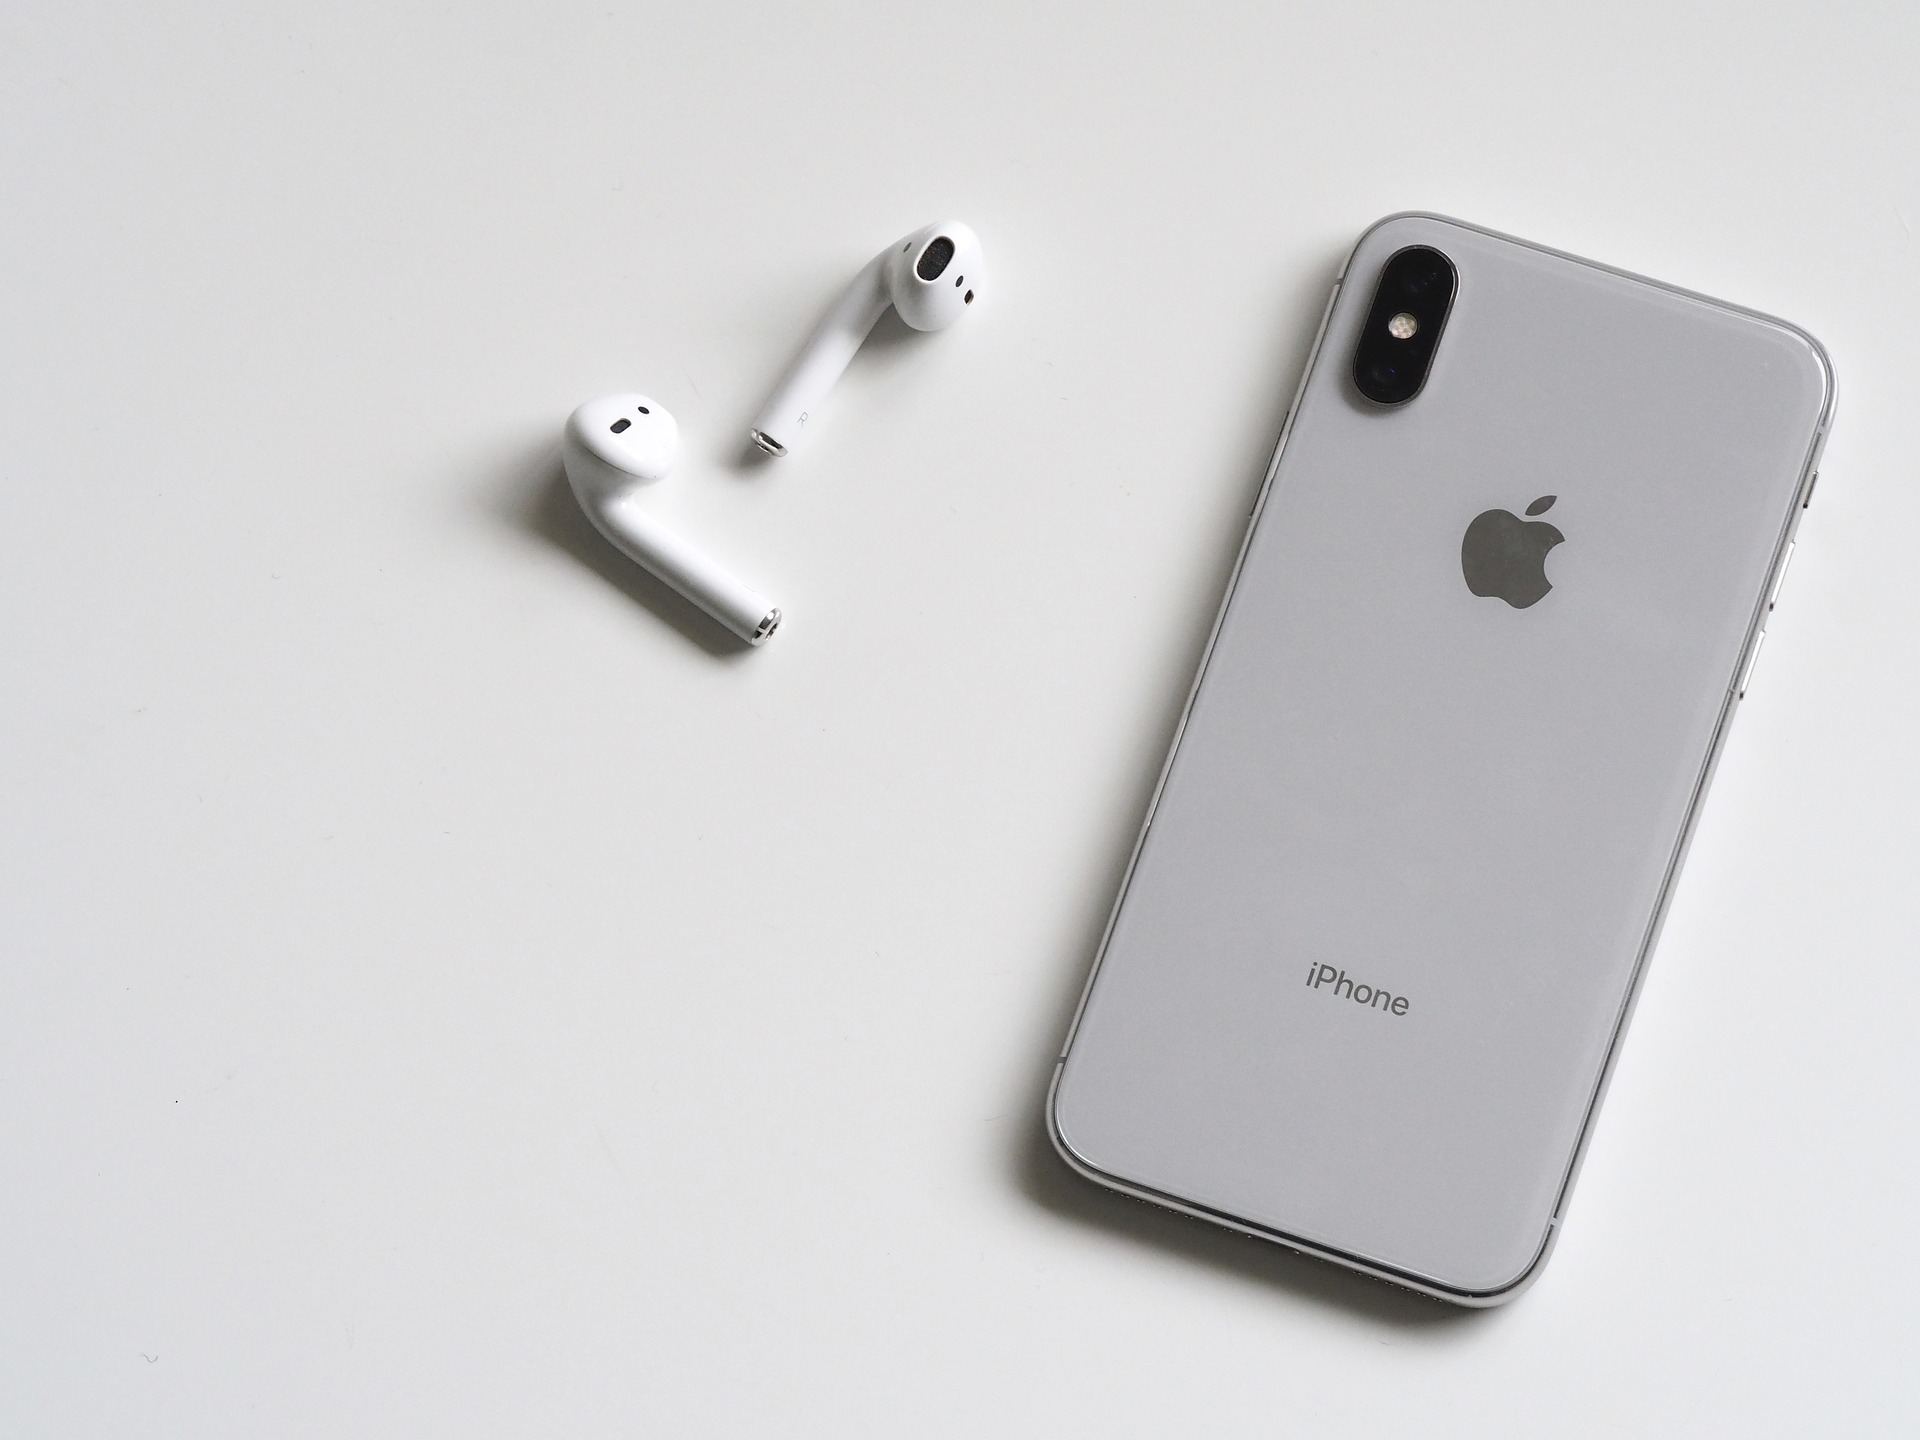  Les iPhone de 2019 seront peut-être capables de scanner leur environnement